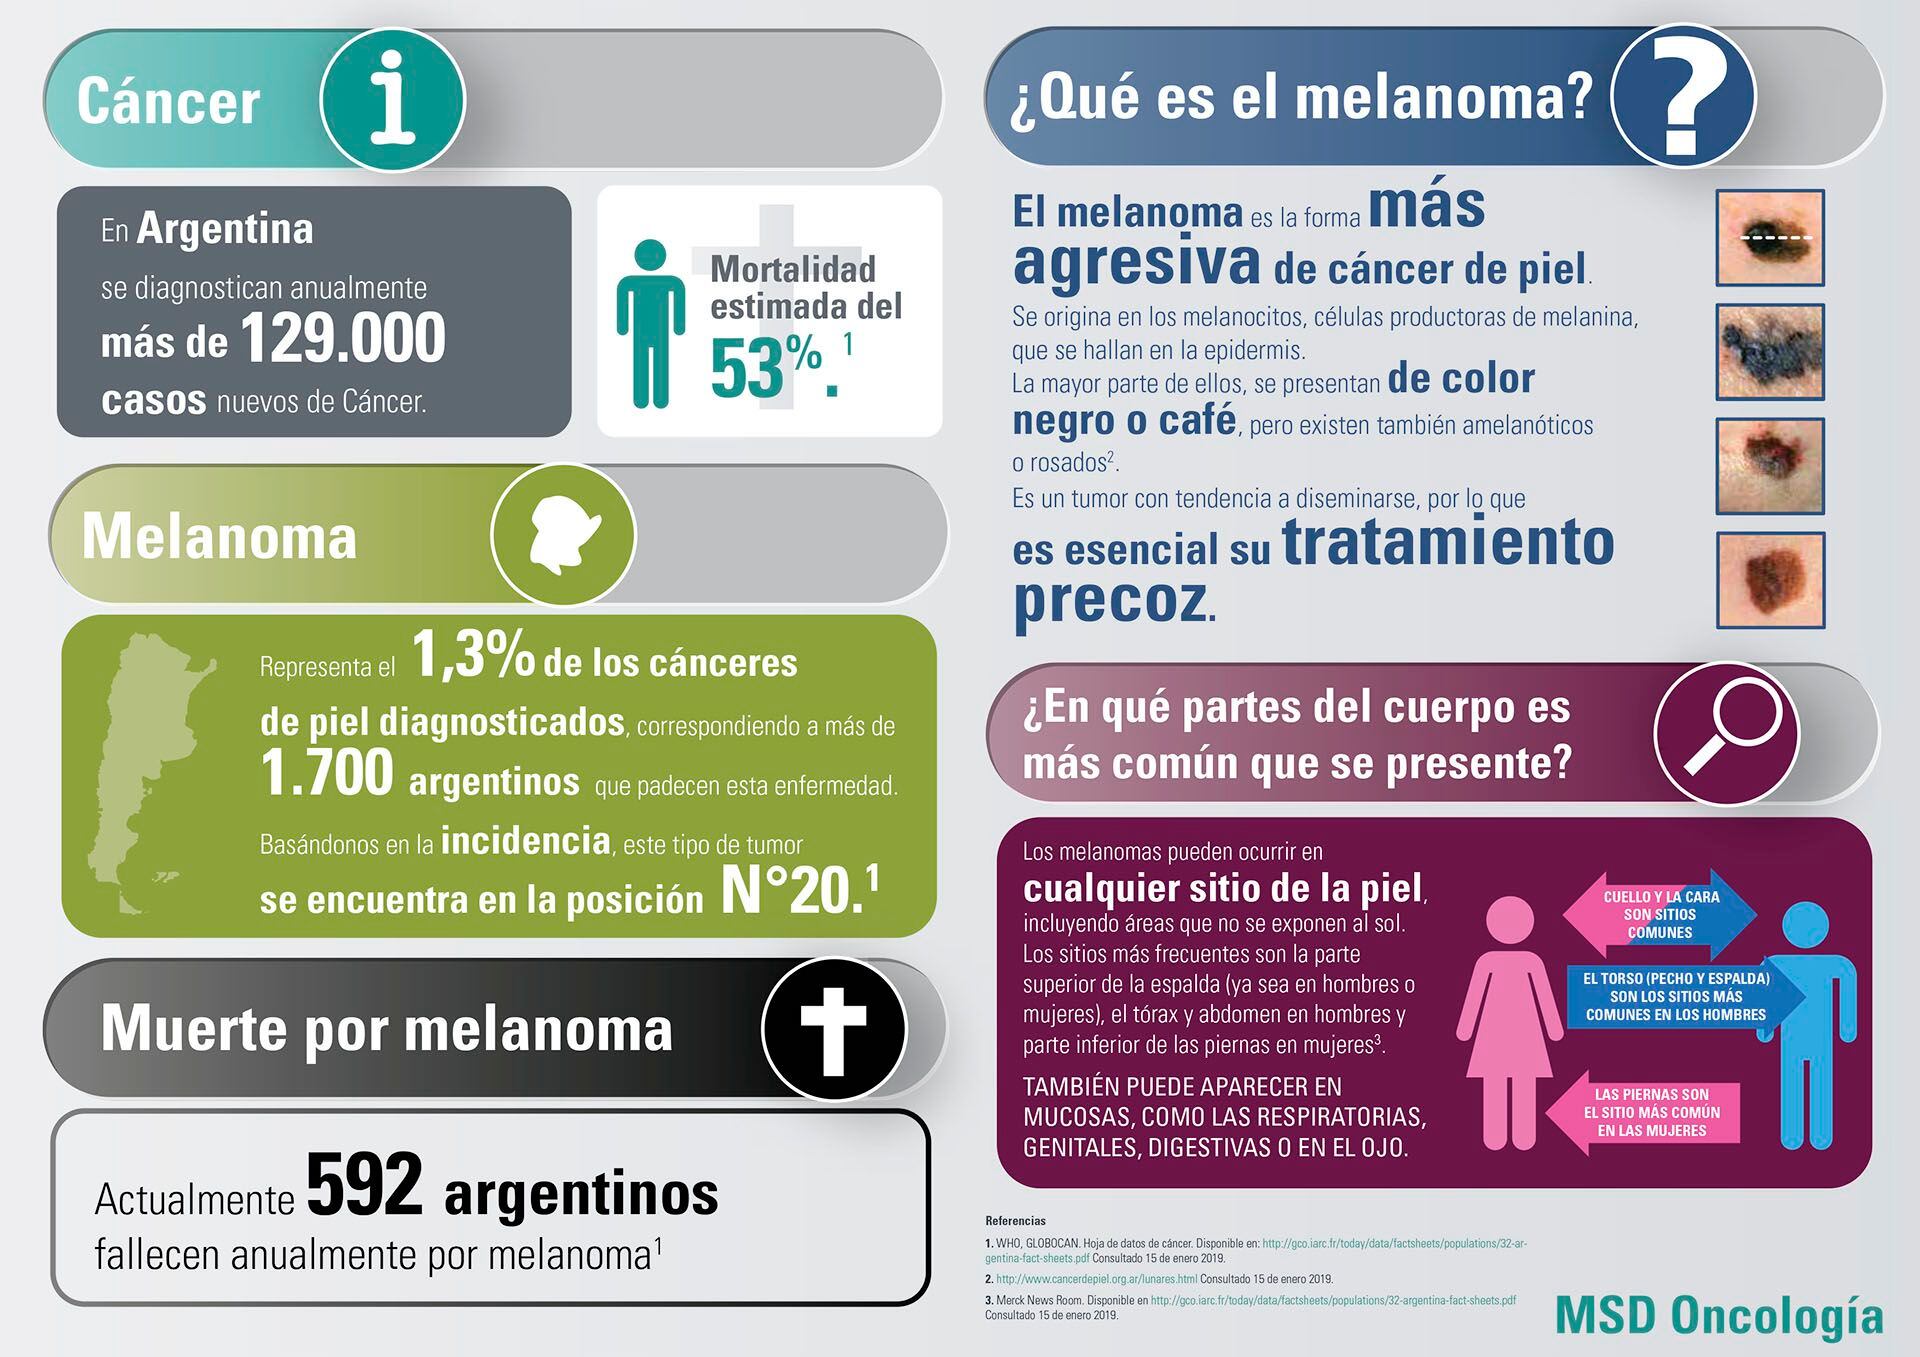 Cerca de 600 argentinos mueren por año a causa del melanoma